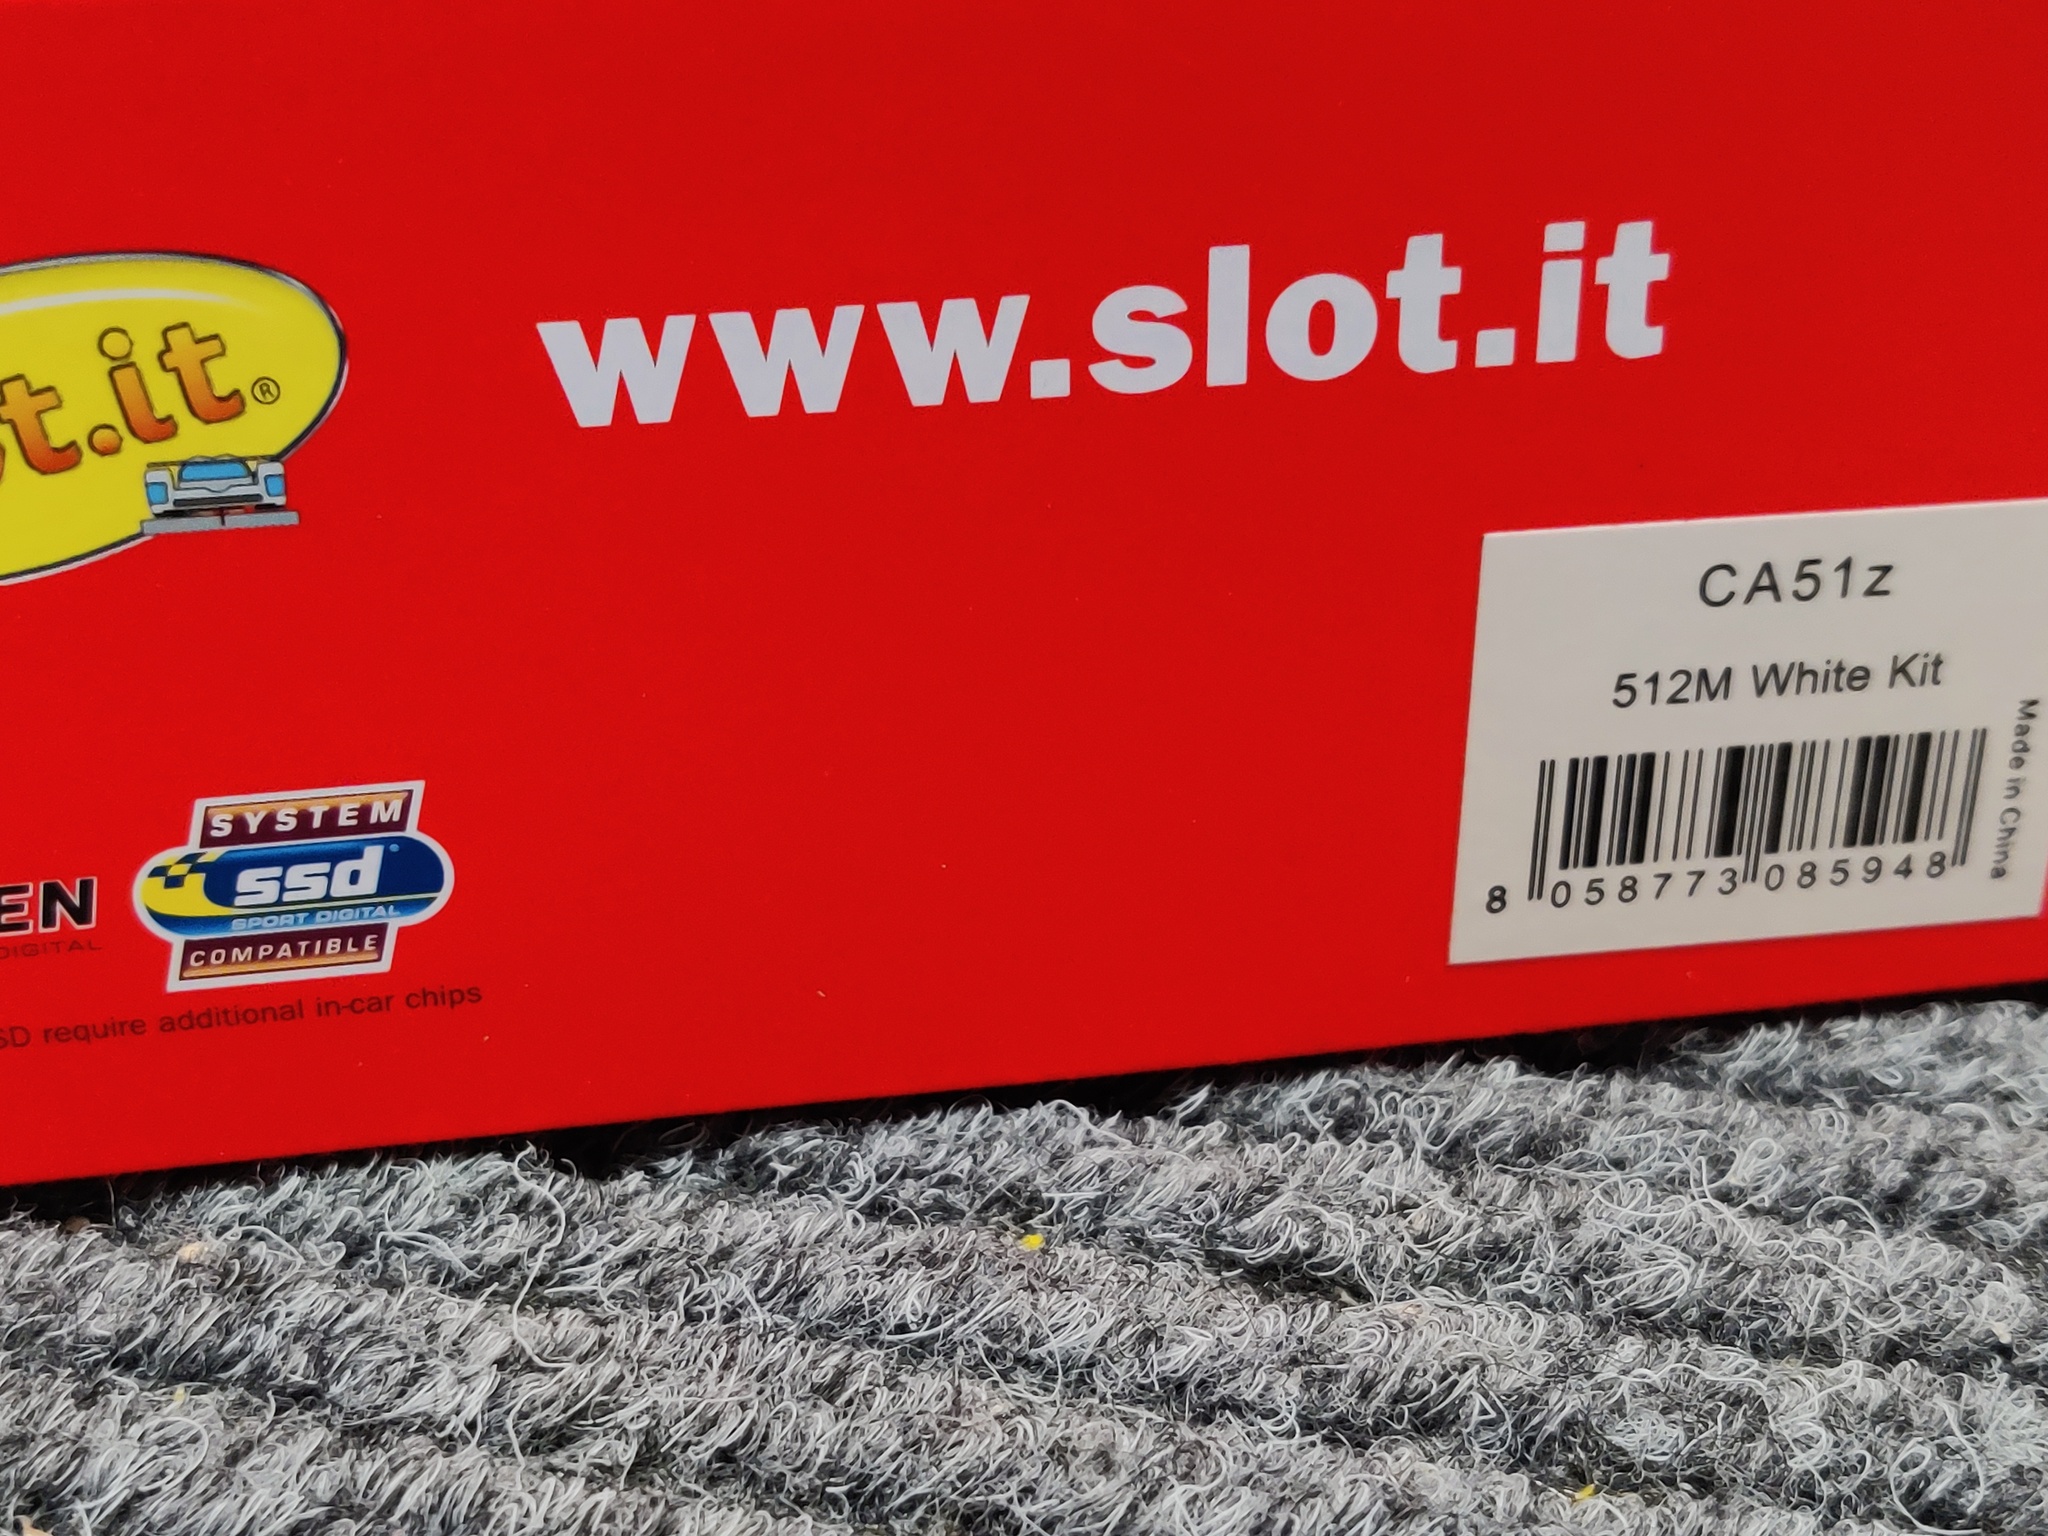 Slot.it - Ferrari 512M - White Kit